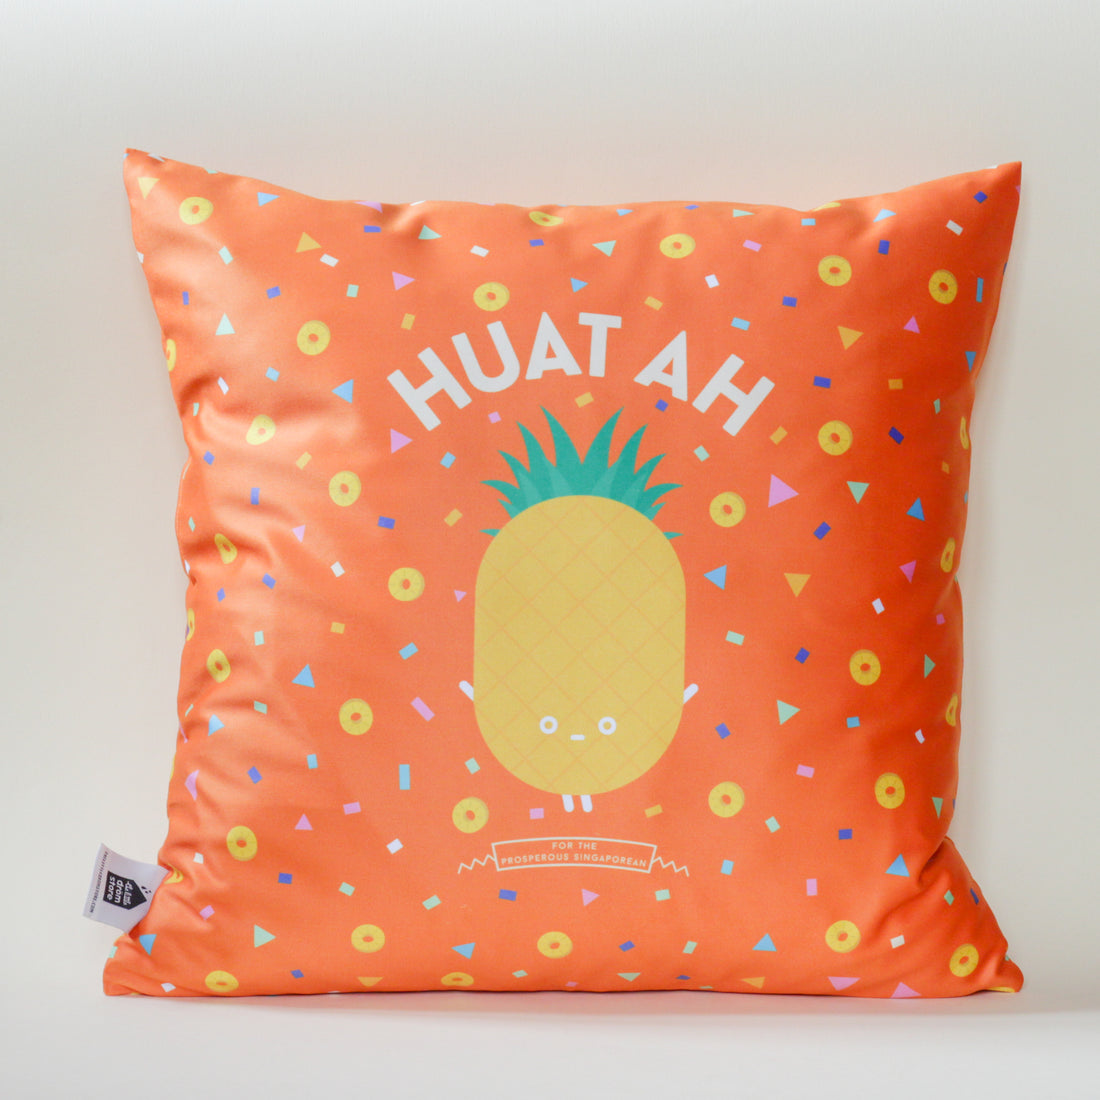 Huat Ah Cushion Cover (Confetti)